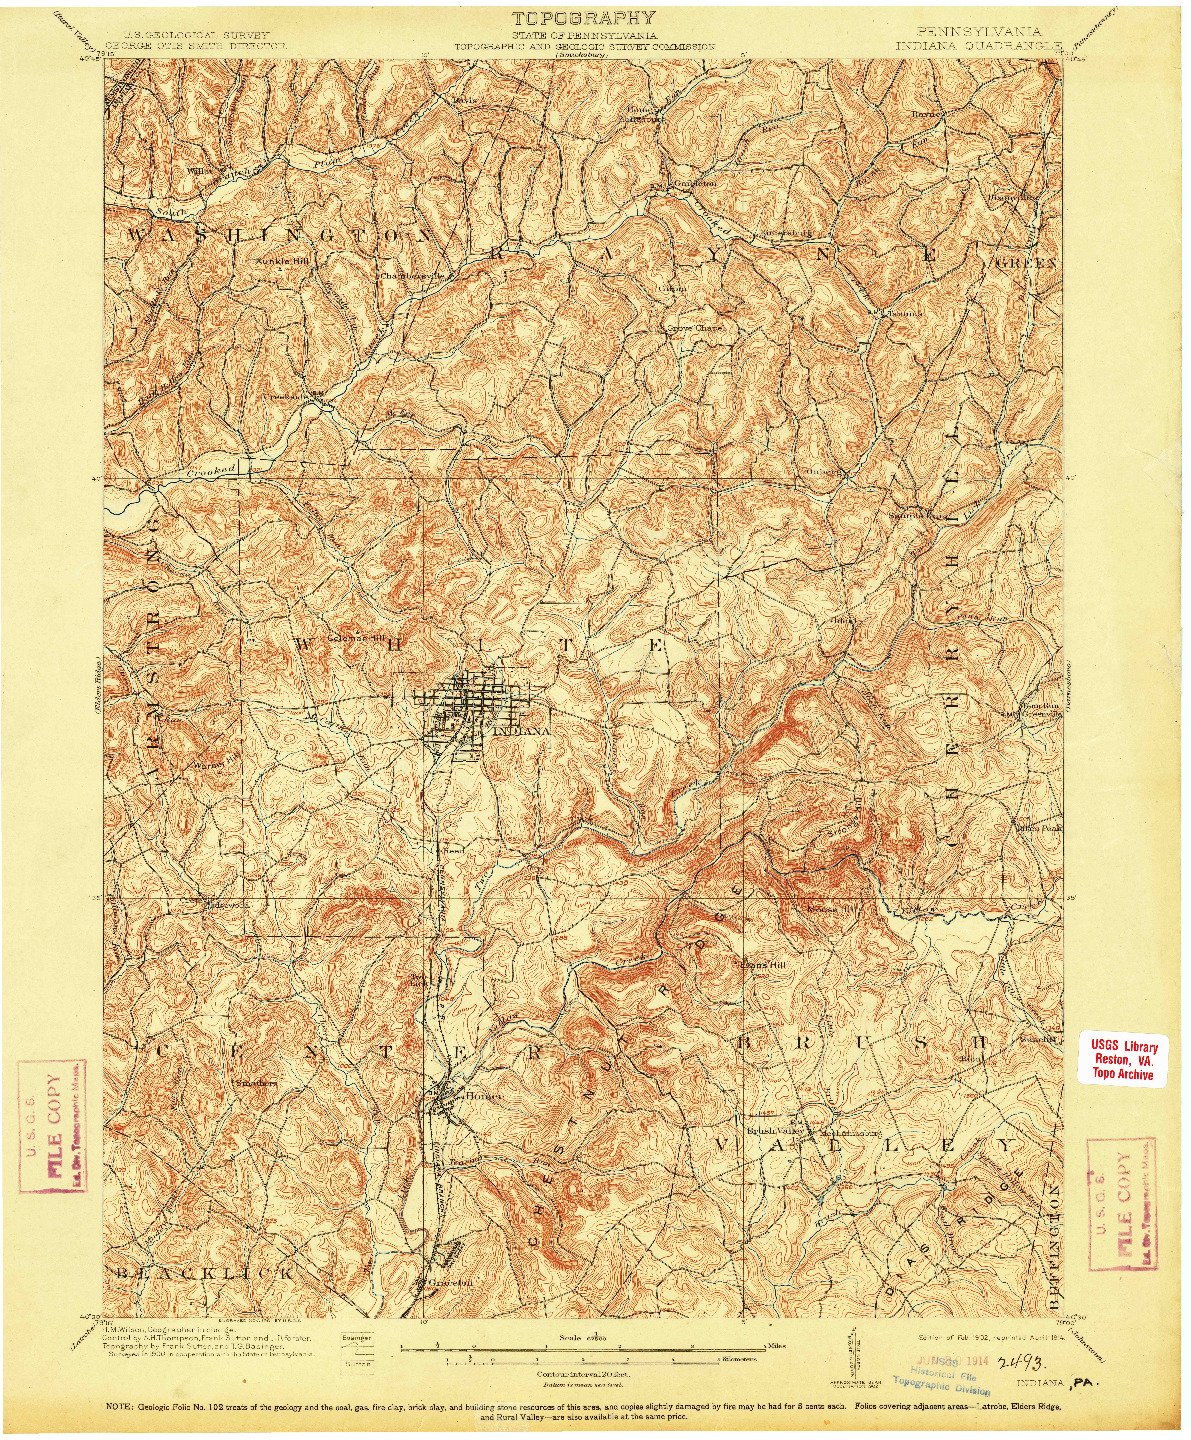 USGS 1:62500-SCALE QUADRANGLE FOR INDIANA, PA 1902